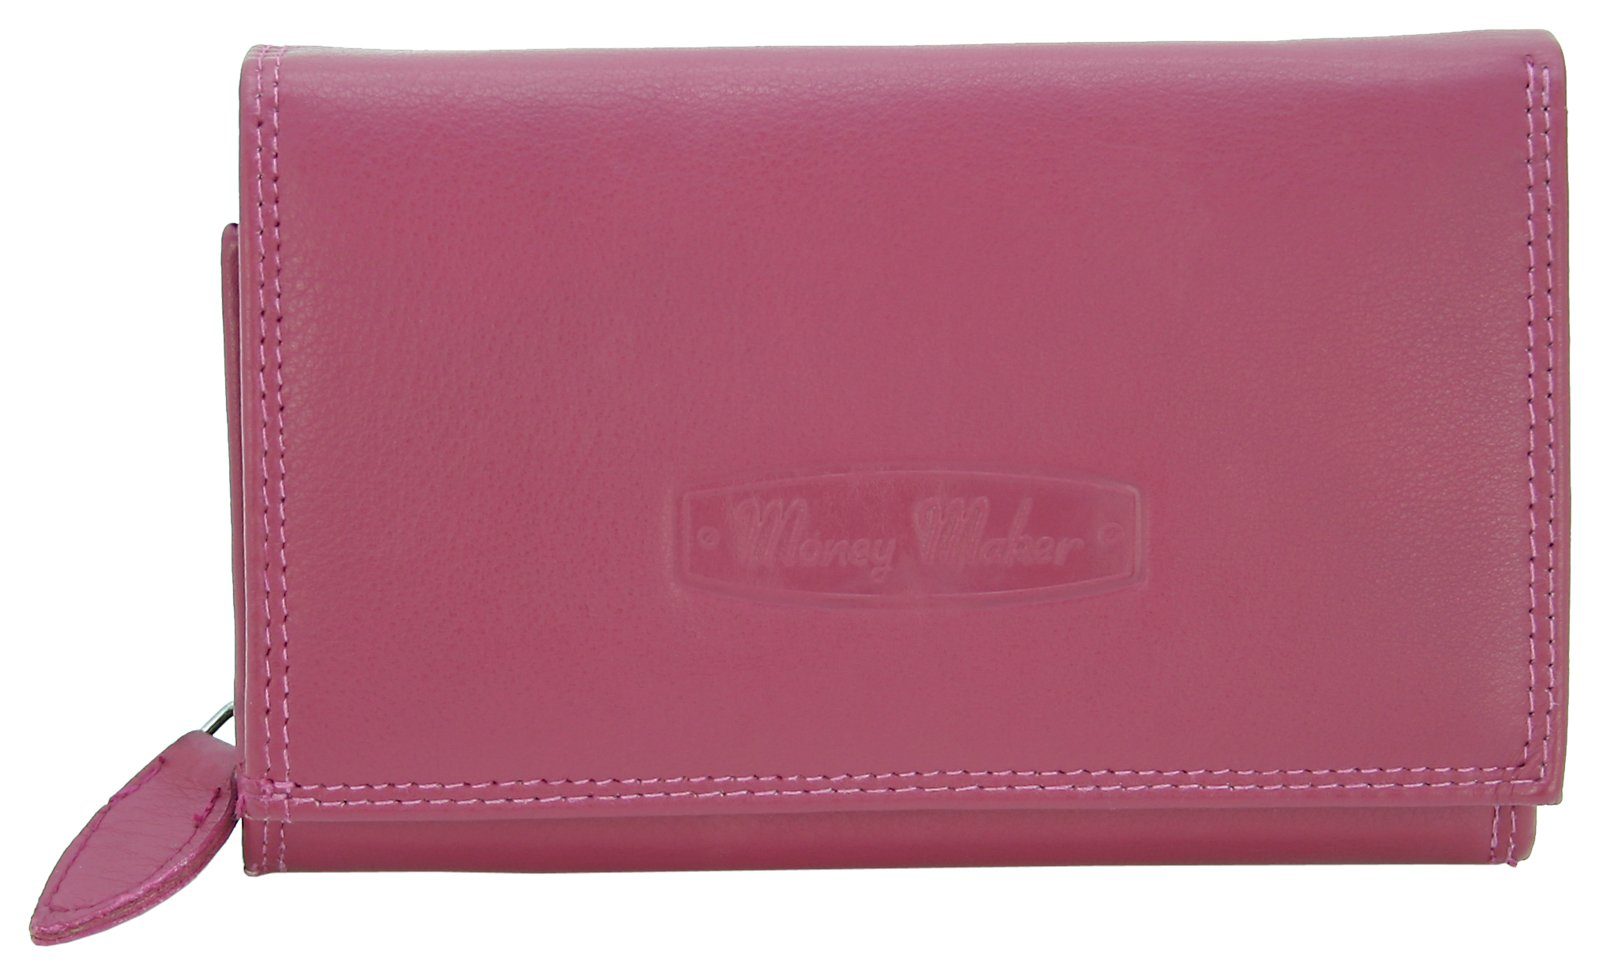 J JONES JENNIFER JONES Geldbörse - Großes Damen Portemonnaie mit RFID Schutz, Echt-Leder Fuchsia (Pink)